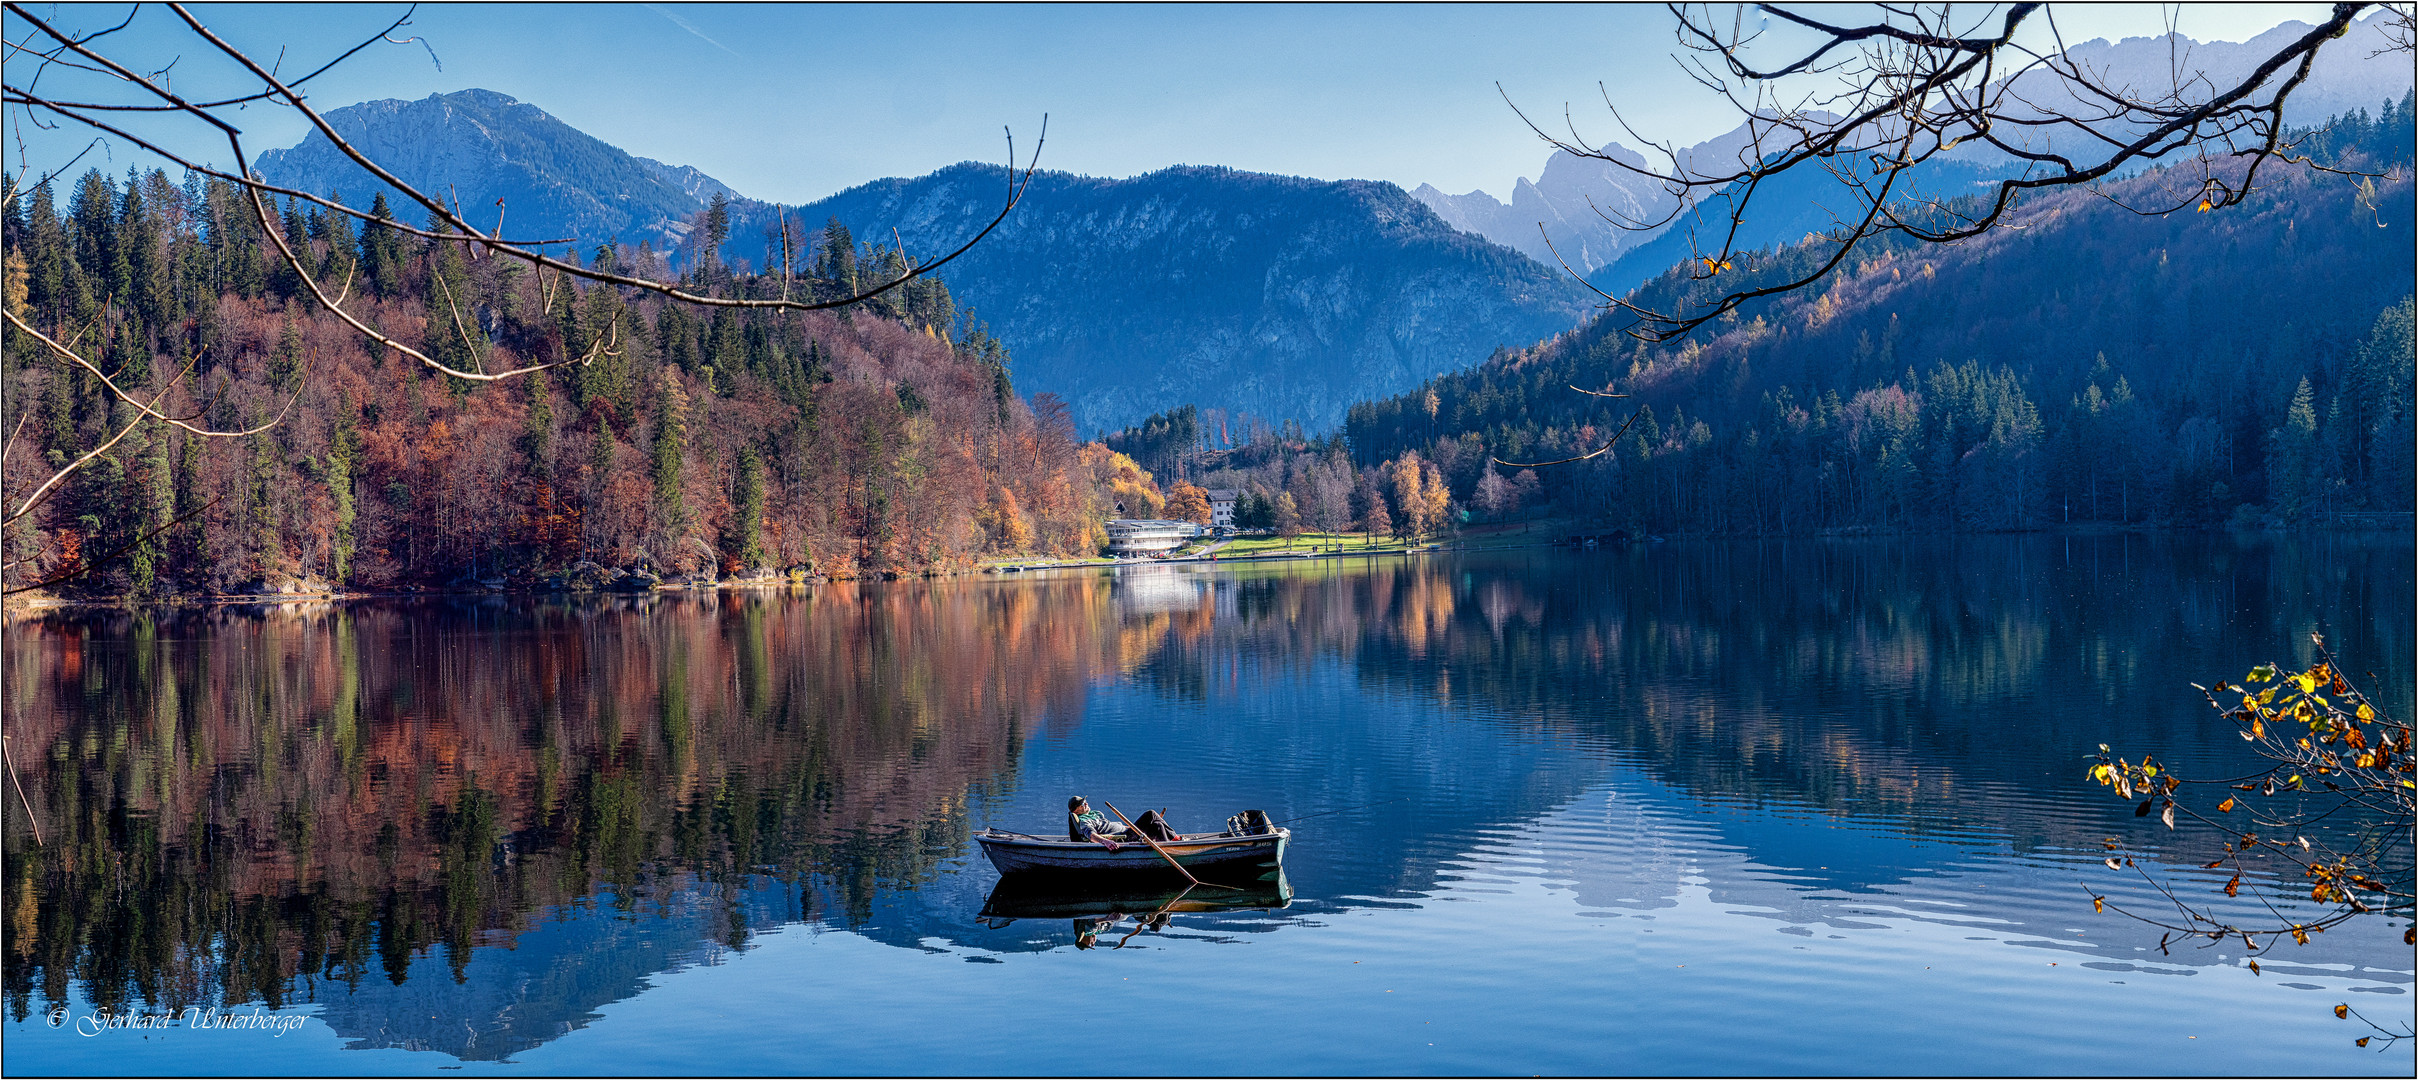 Mußestunden am Hechtsee in Tirol